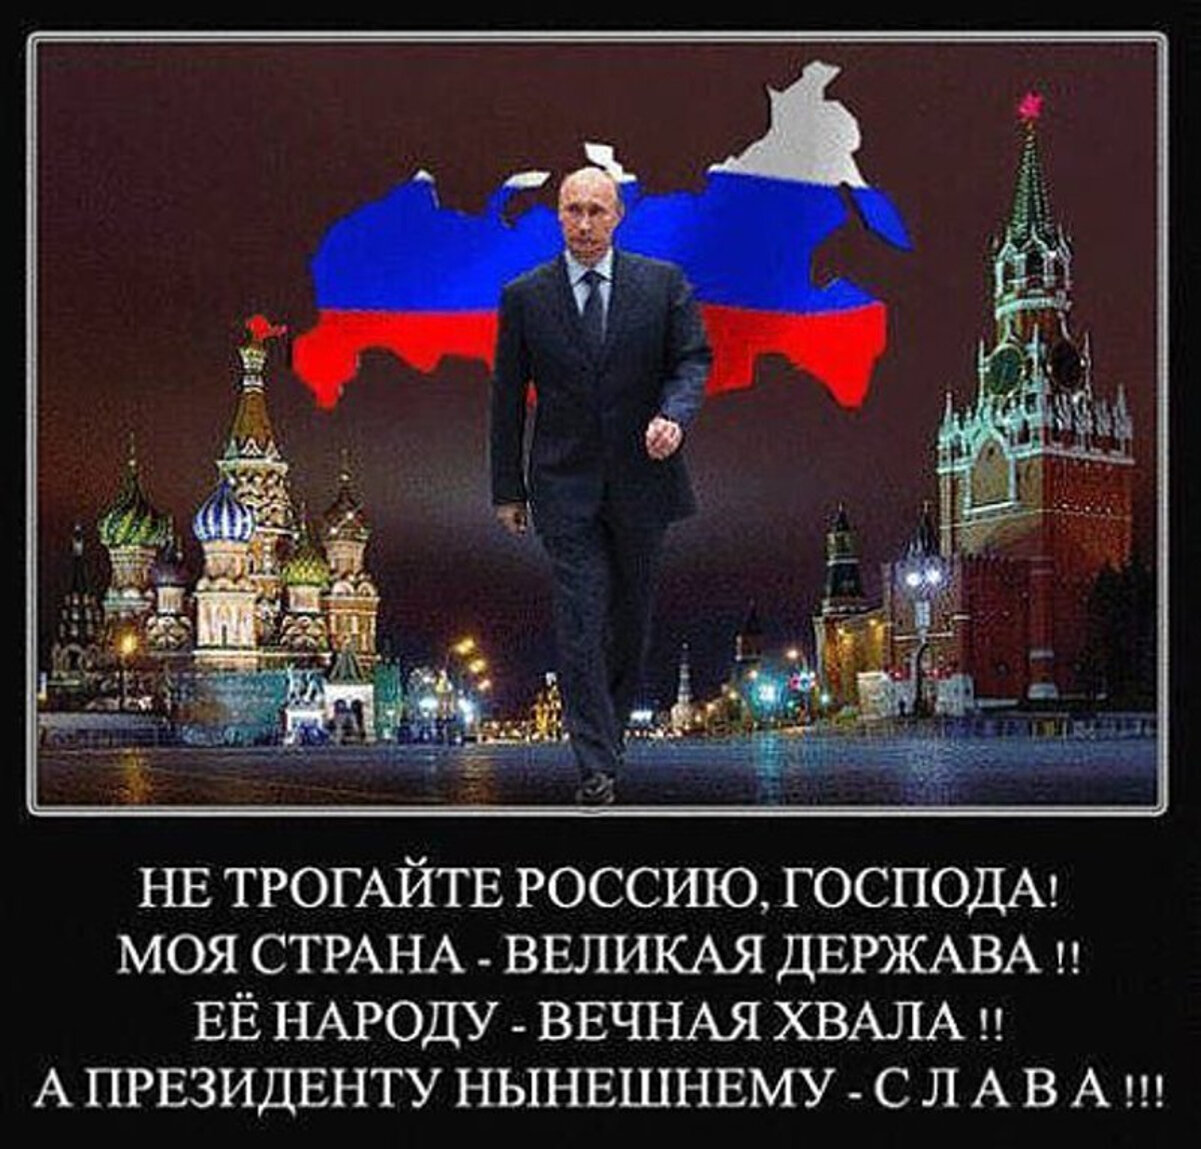 Россия популярна в мире. Самая Великая Страна. Не трогайте Россию Господа. За Путина за Россию Великую державу.